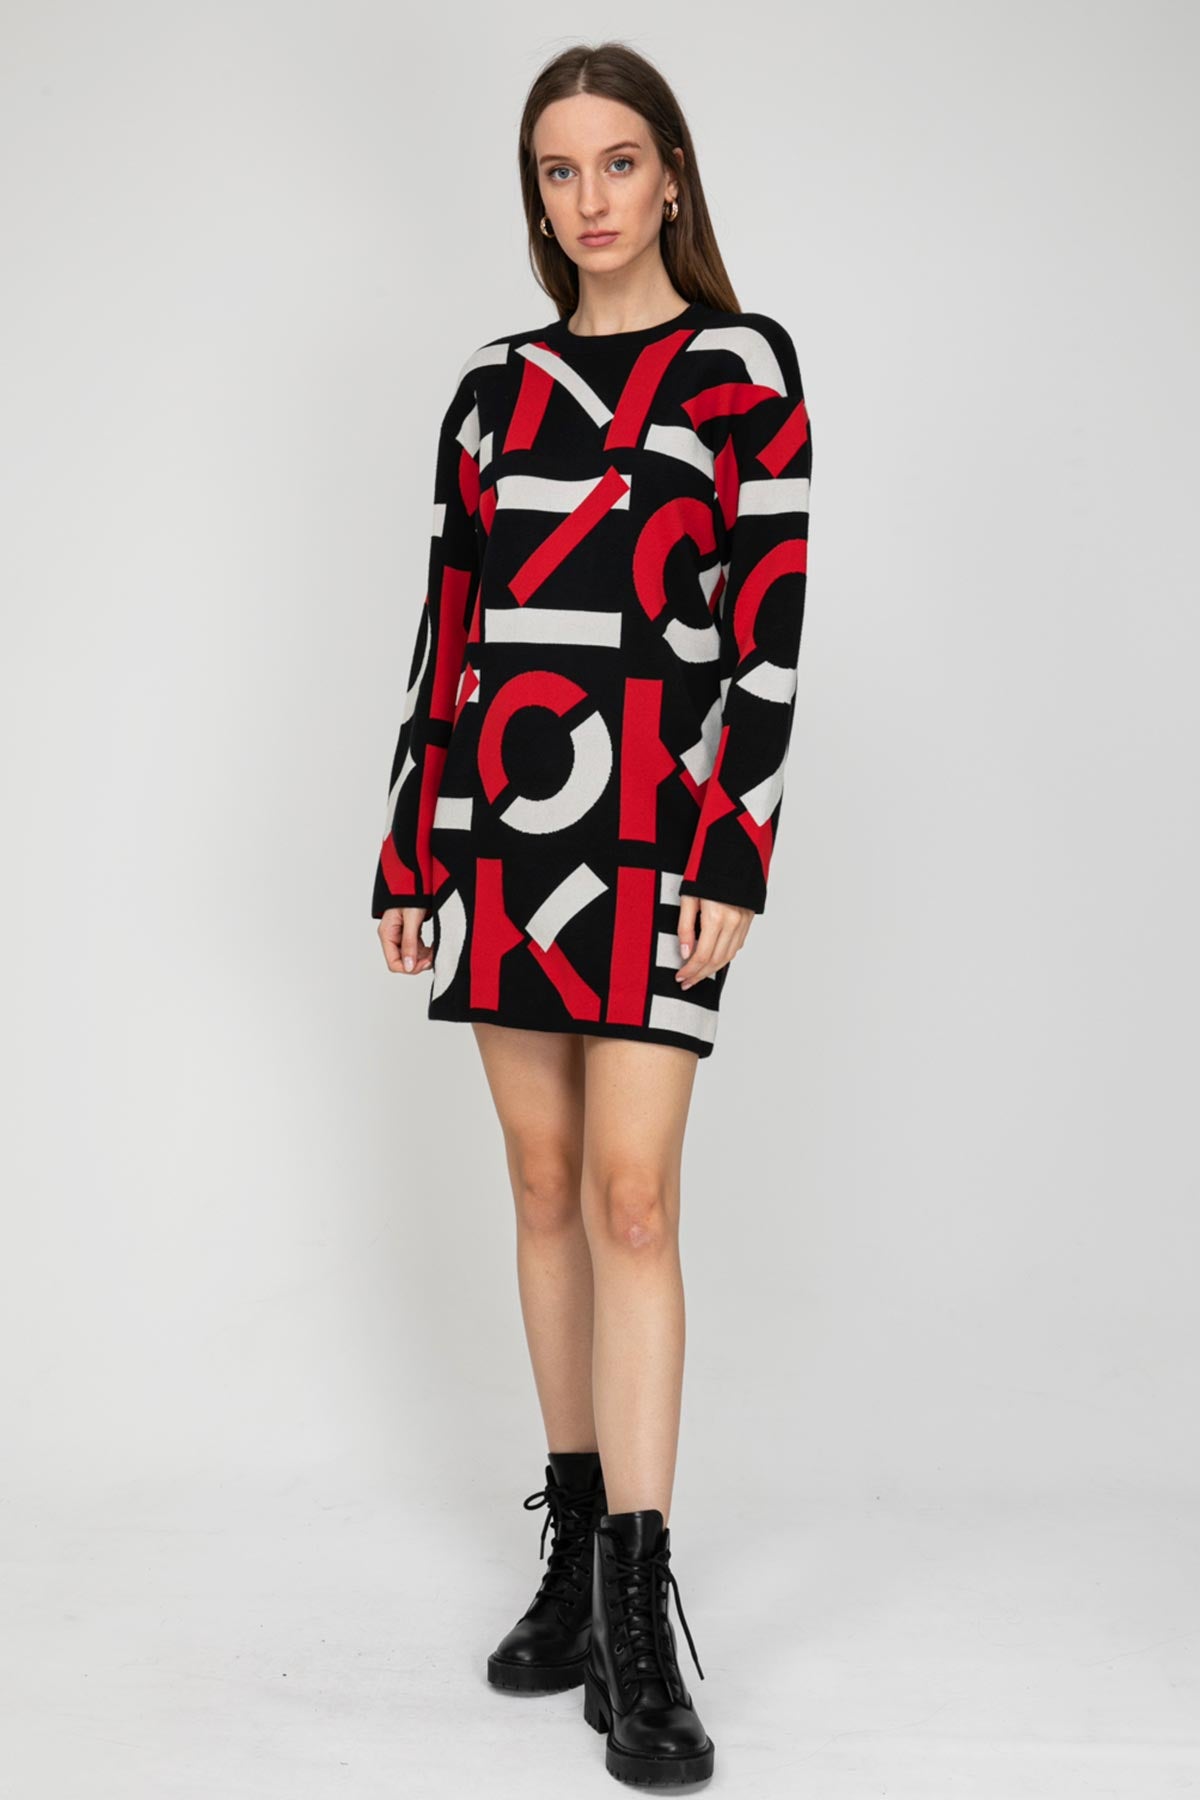 Kenzo Monogram Triko Elbise-Libas Trendy Fashion Store